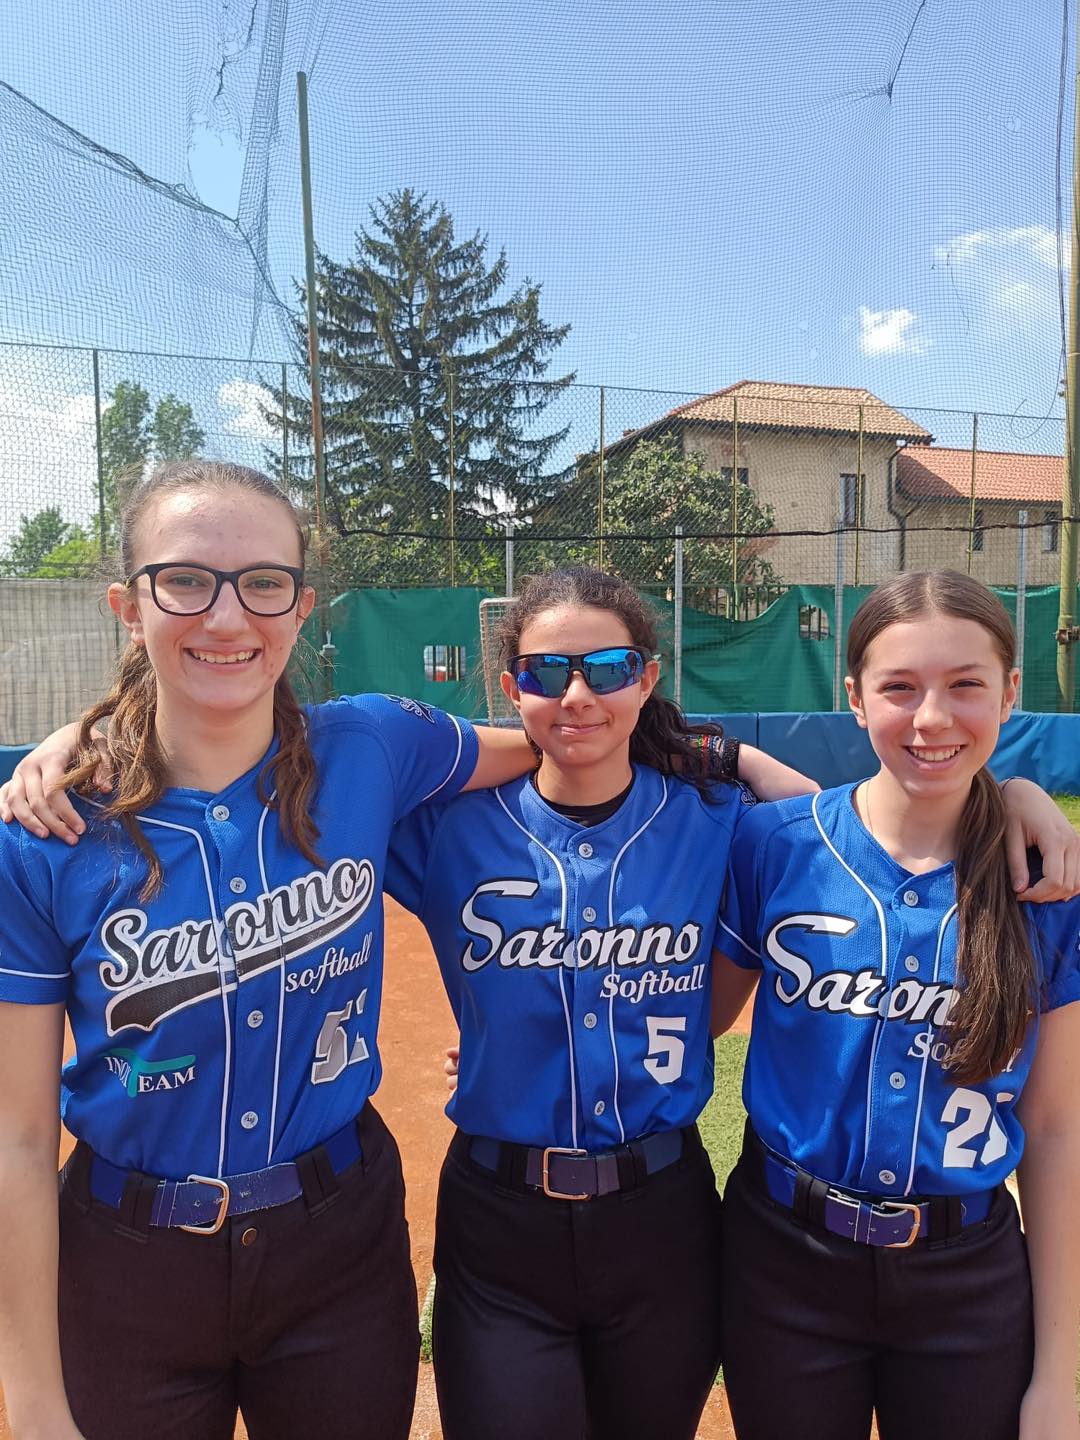 Softball giovanile: tre giocatrici del Saronno nella rappresentativa lombarda U15 in Junior league